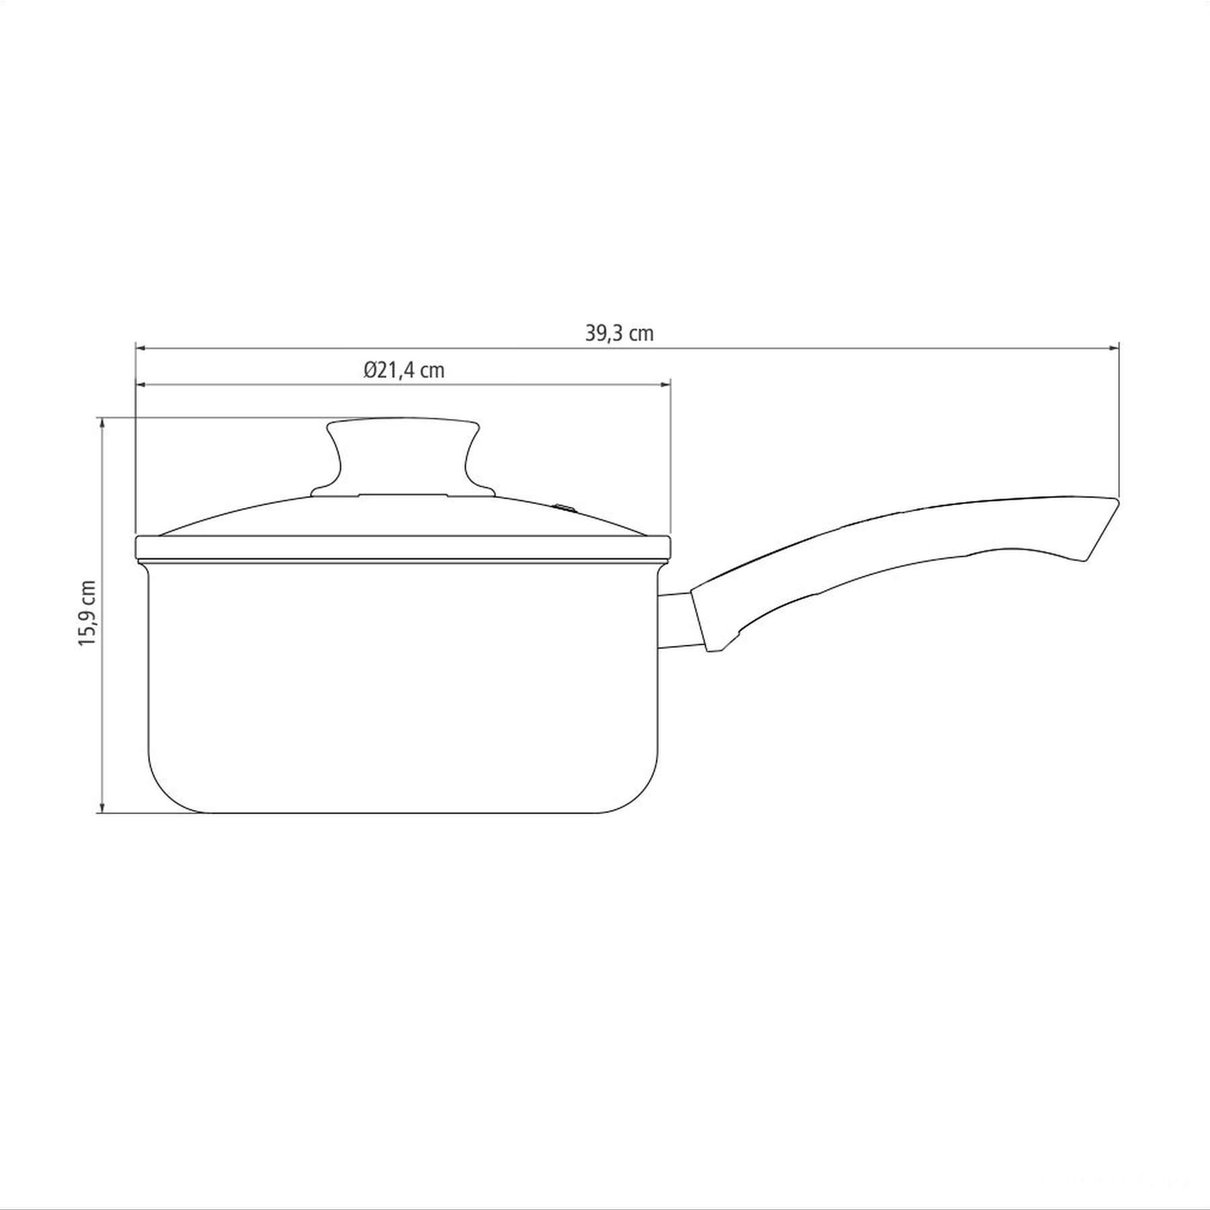 Panela Paris Antiaderente Starflon Max Chumbo com Tampa de Vidro 20 cm 2,9 L